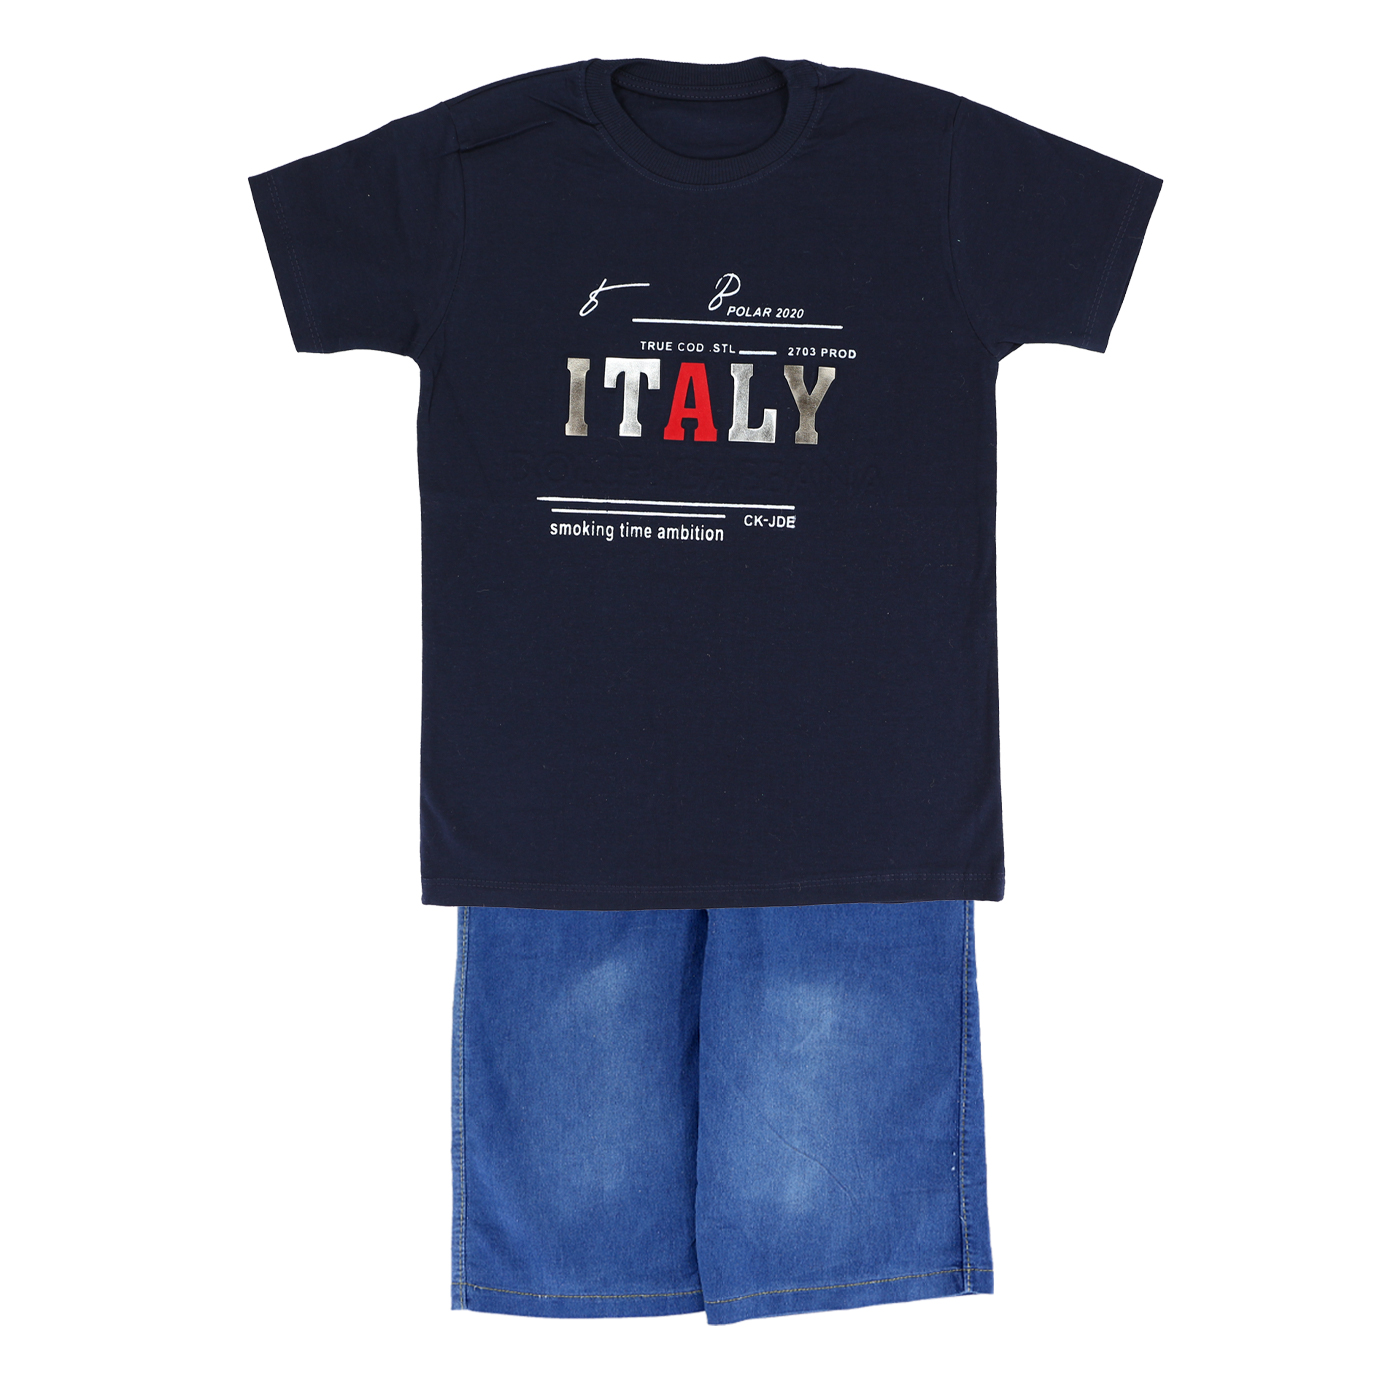  ست تی شرت و شلوارک پسرانه طرح italy کد 01-125